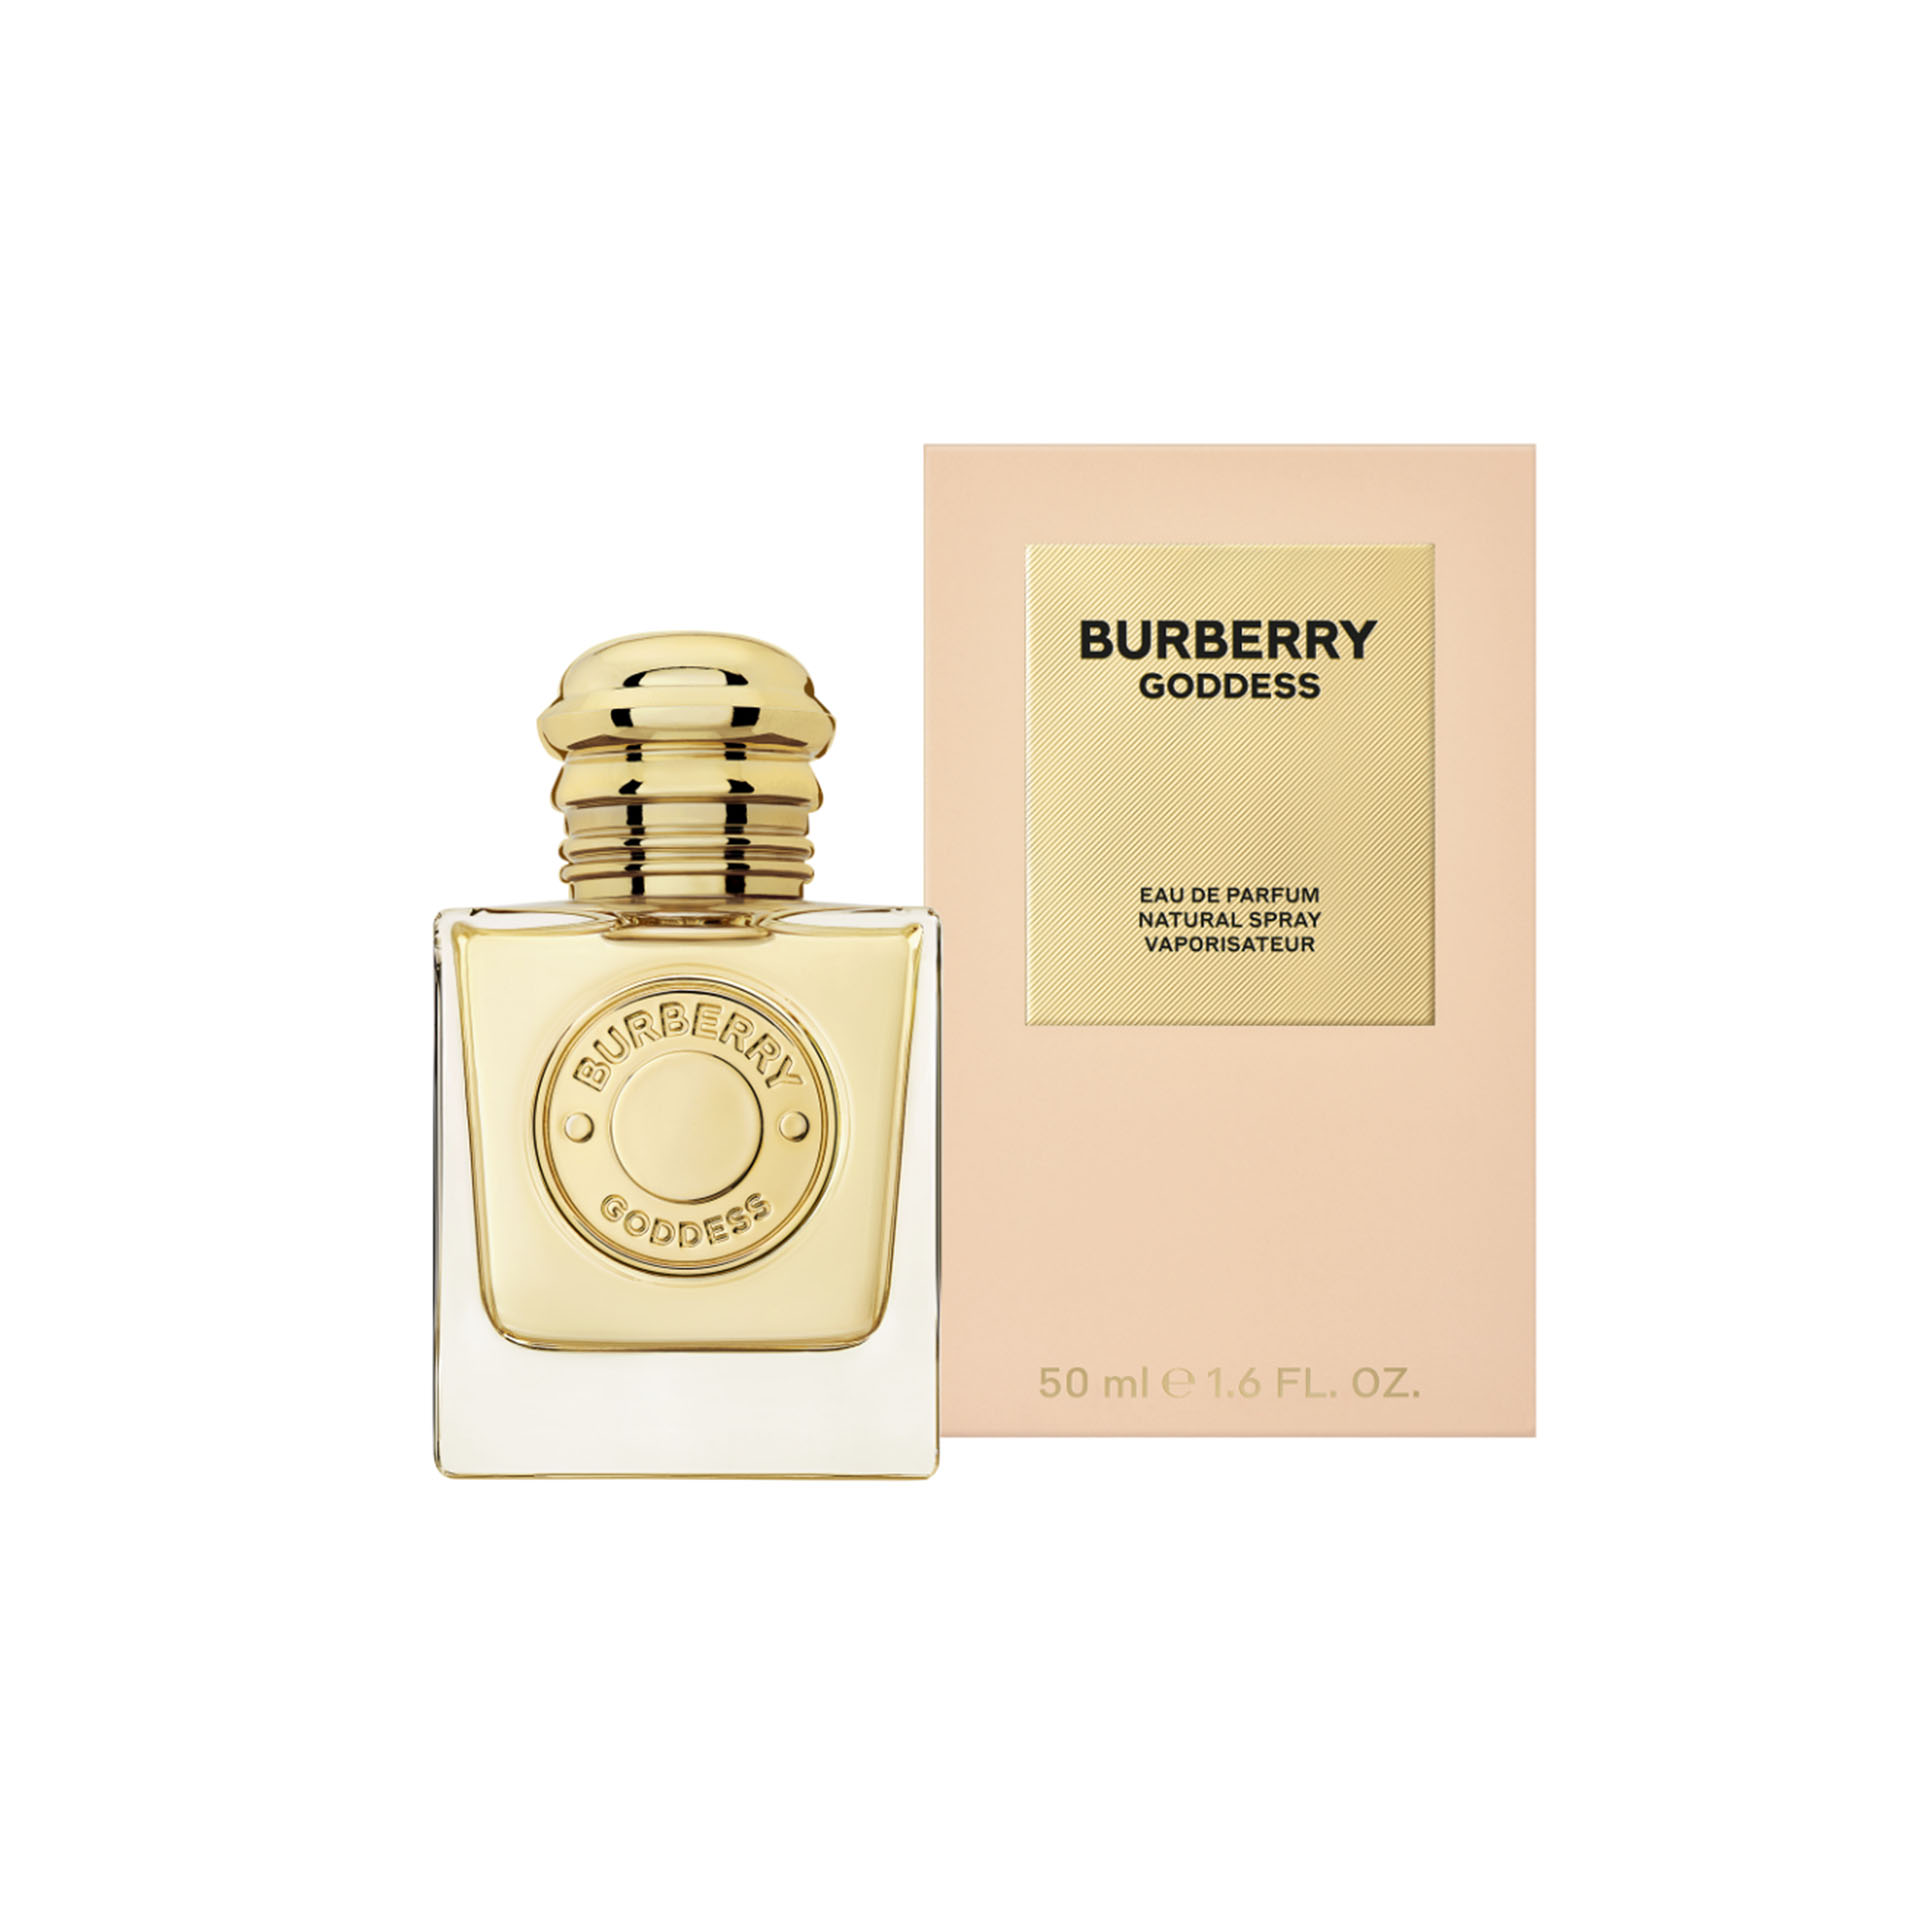 BURBERRY Goddess Eau de Parfum for Women (50ml)